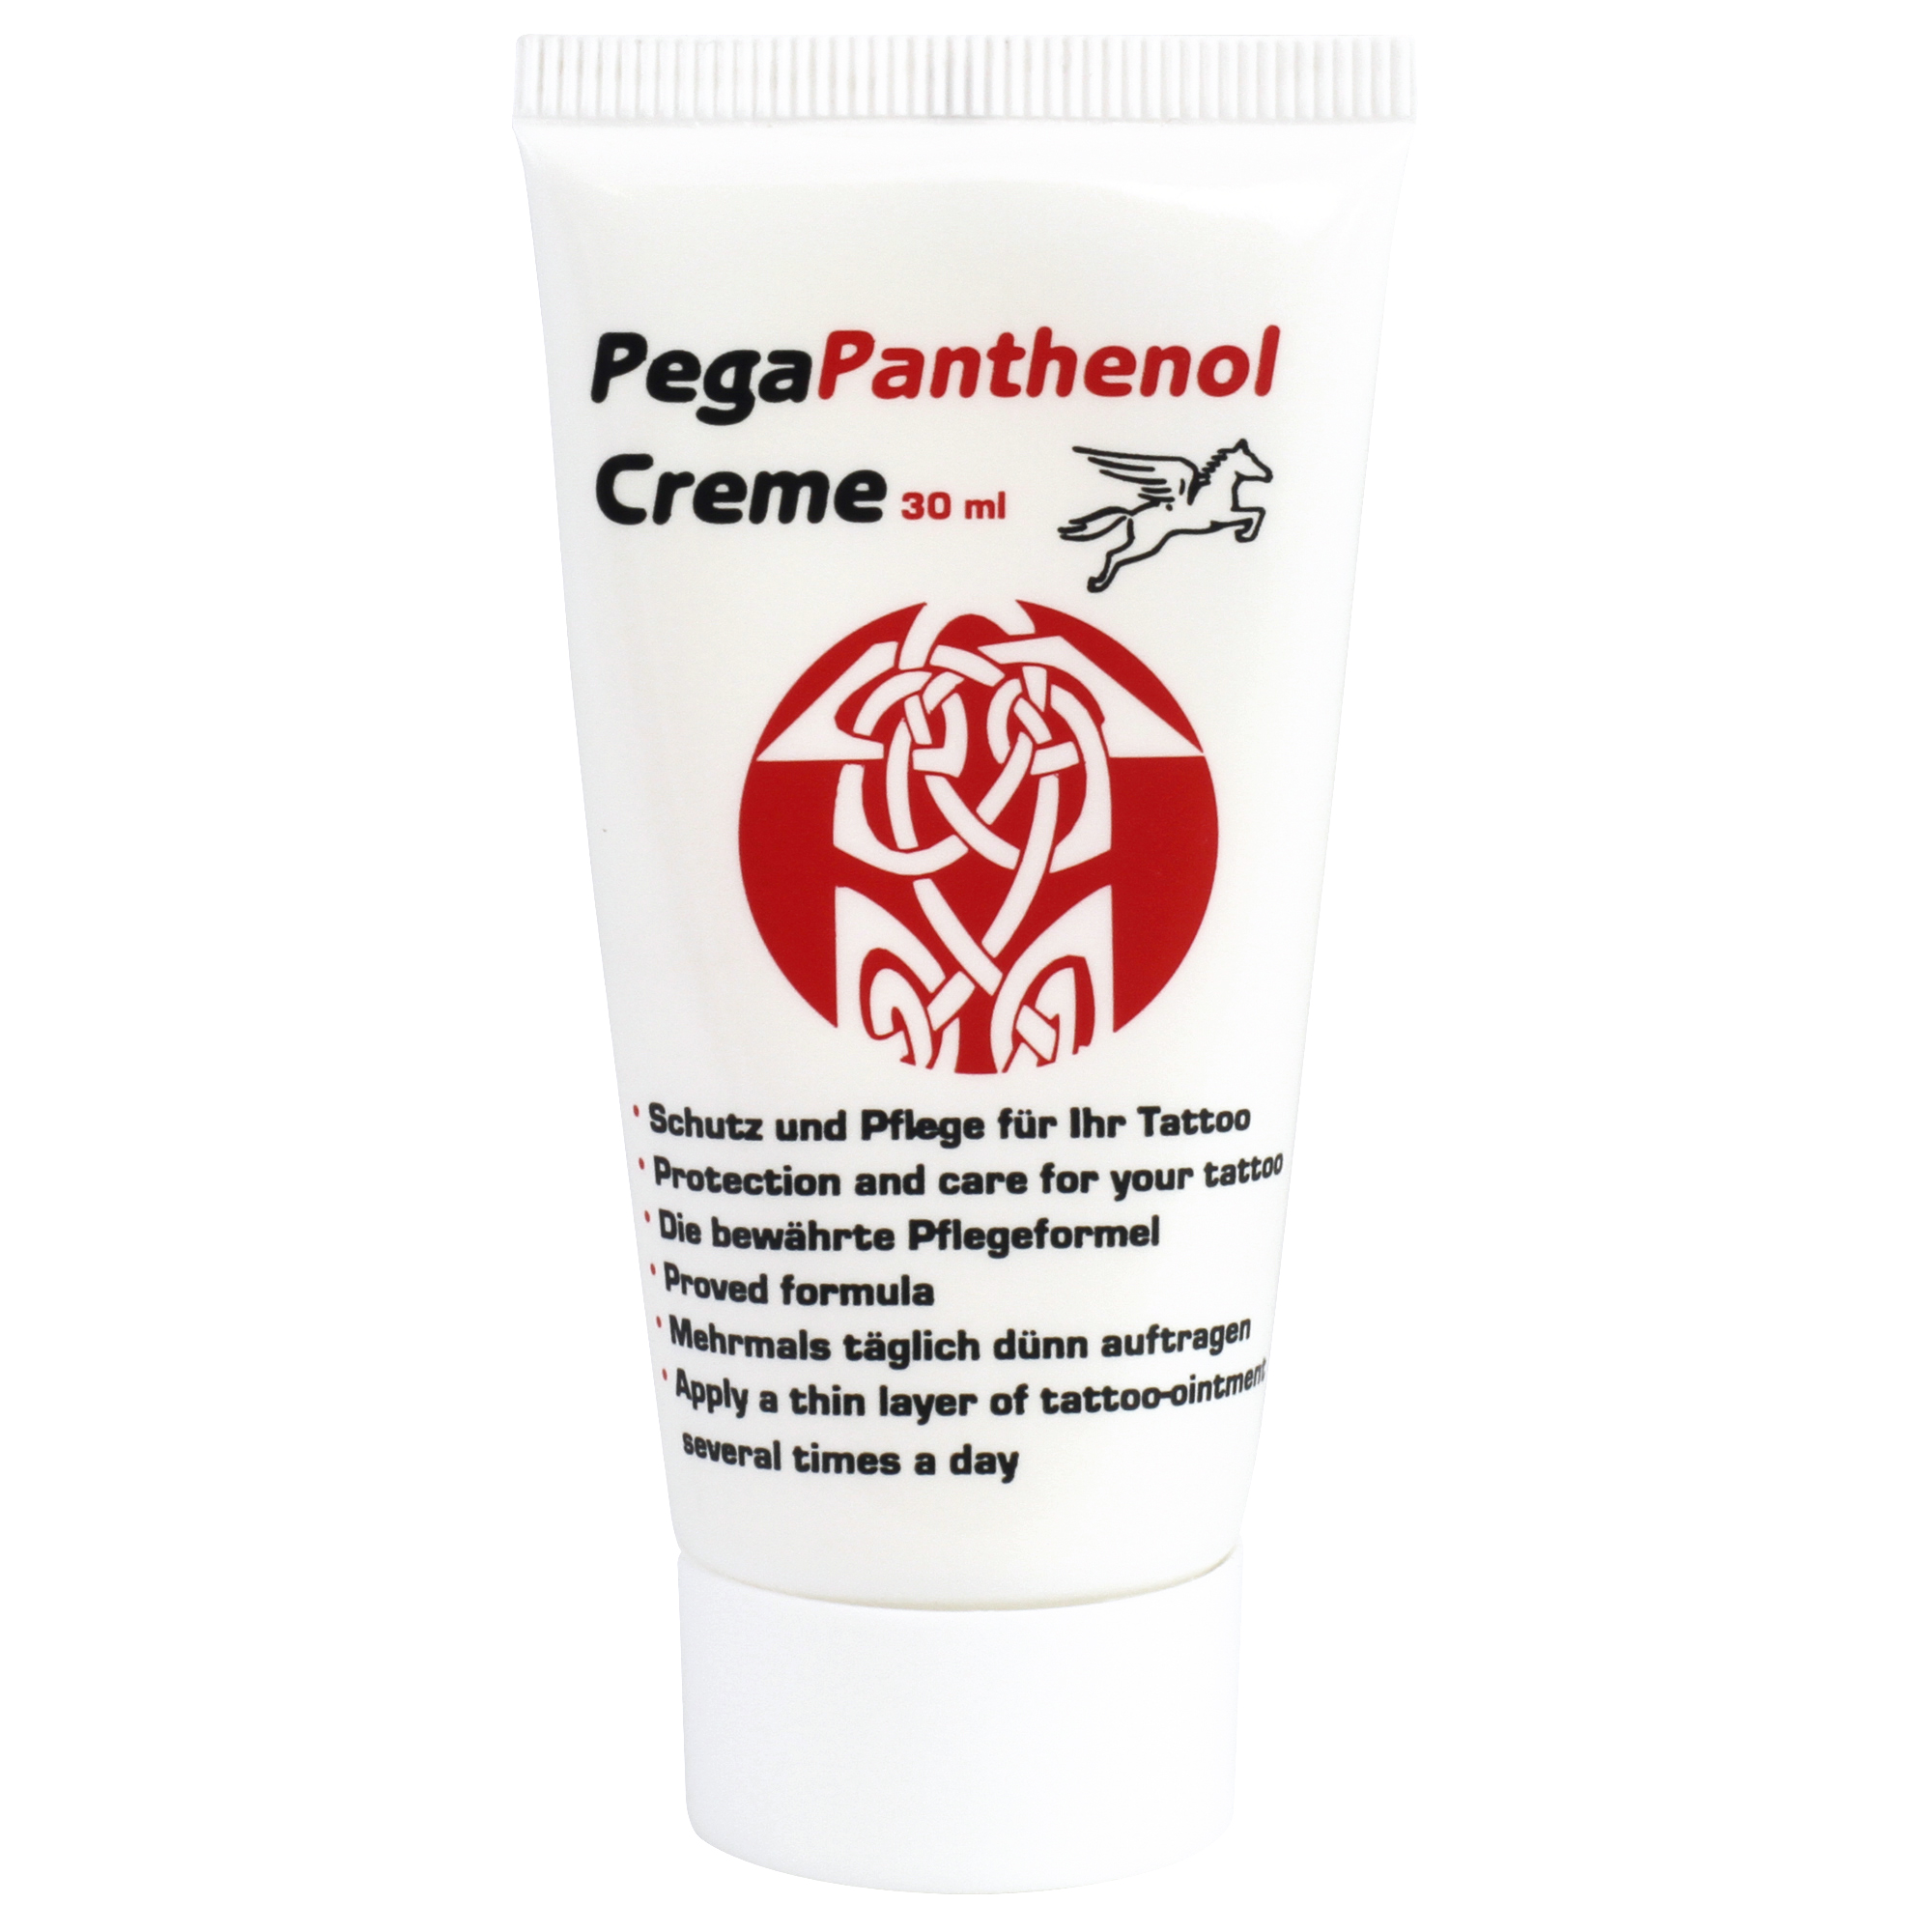 PegaPanthenol Creme 30 ml Tattoo-Creme